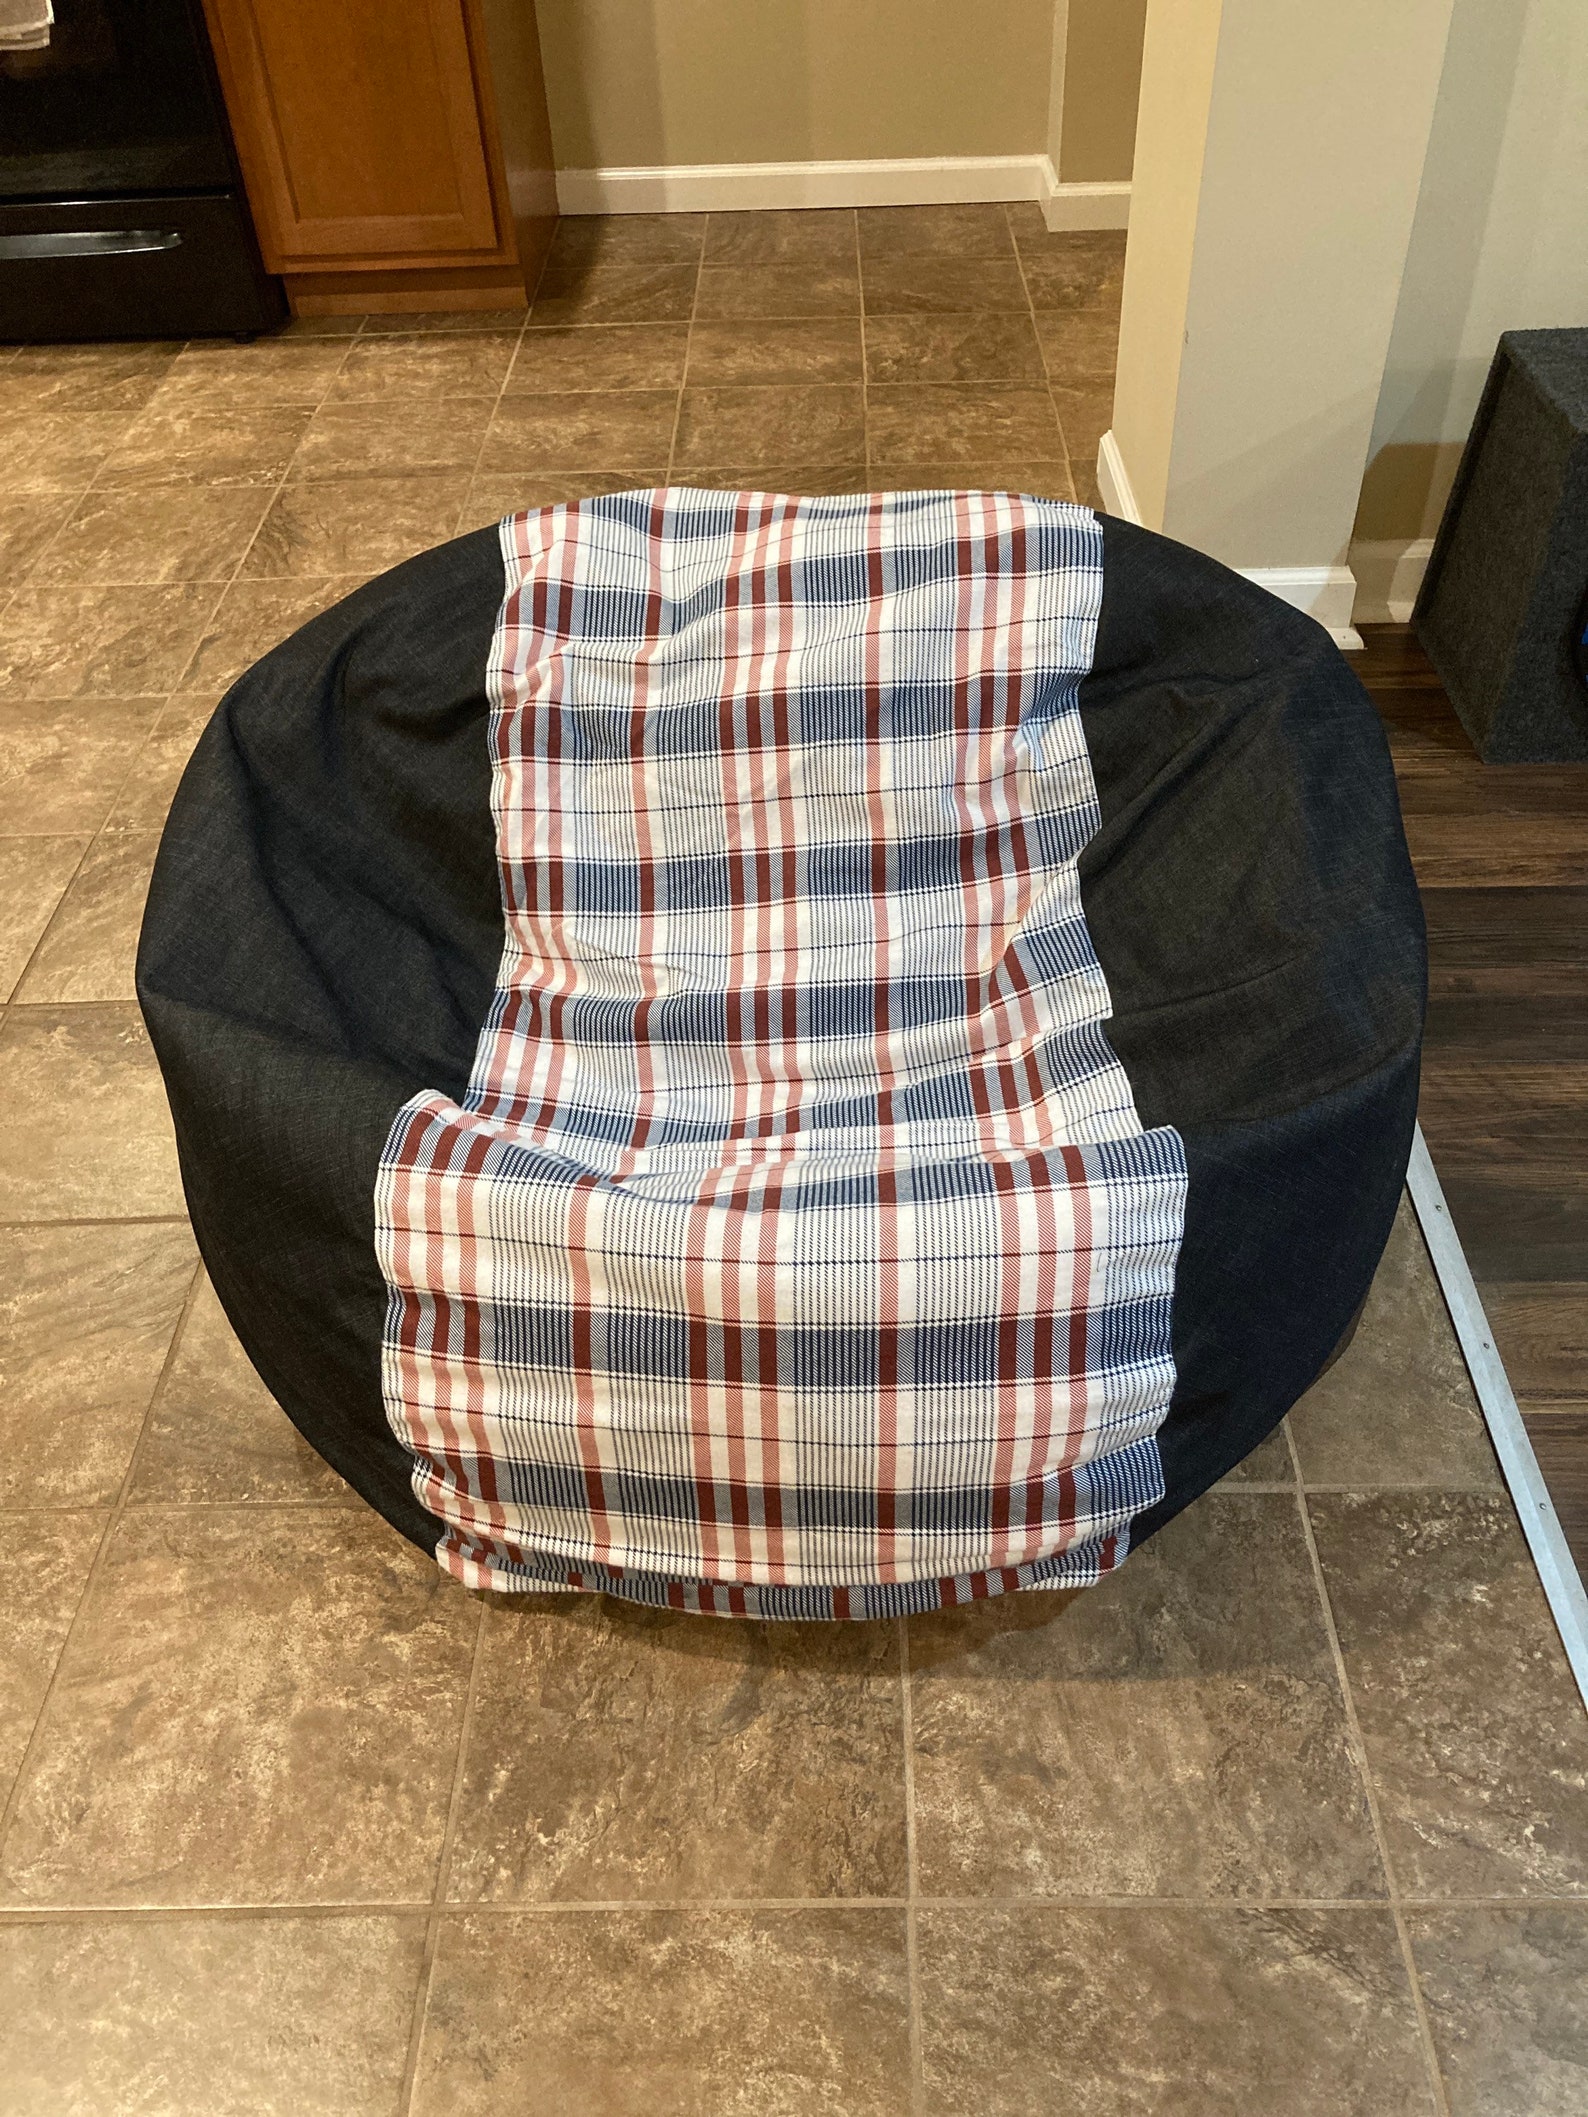 Unique Giant Bean Bag Chair Canada 